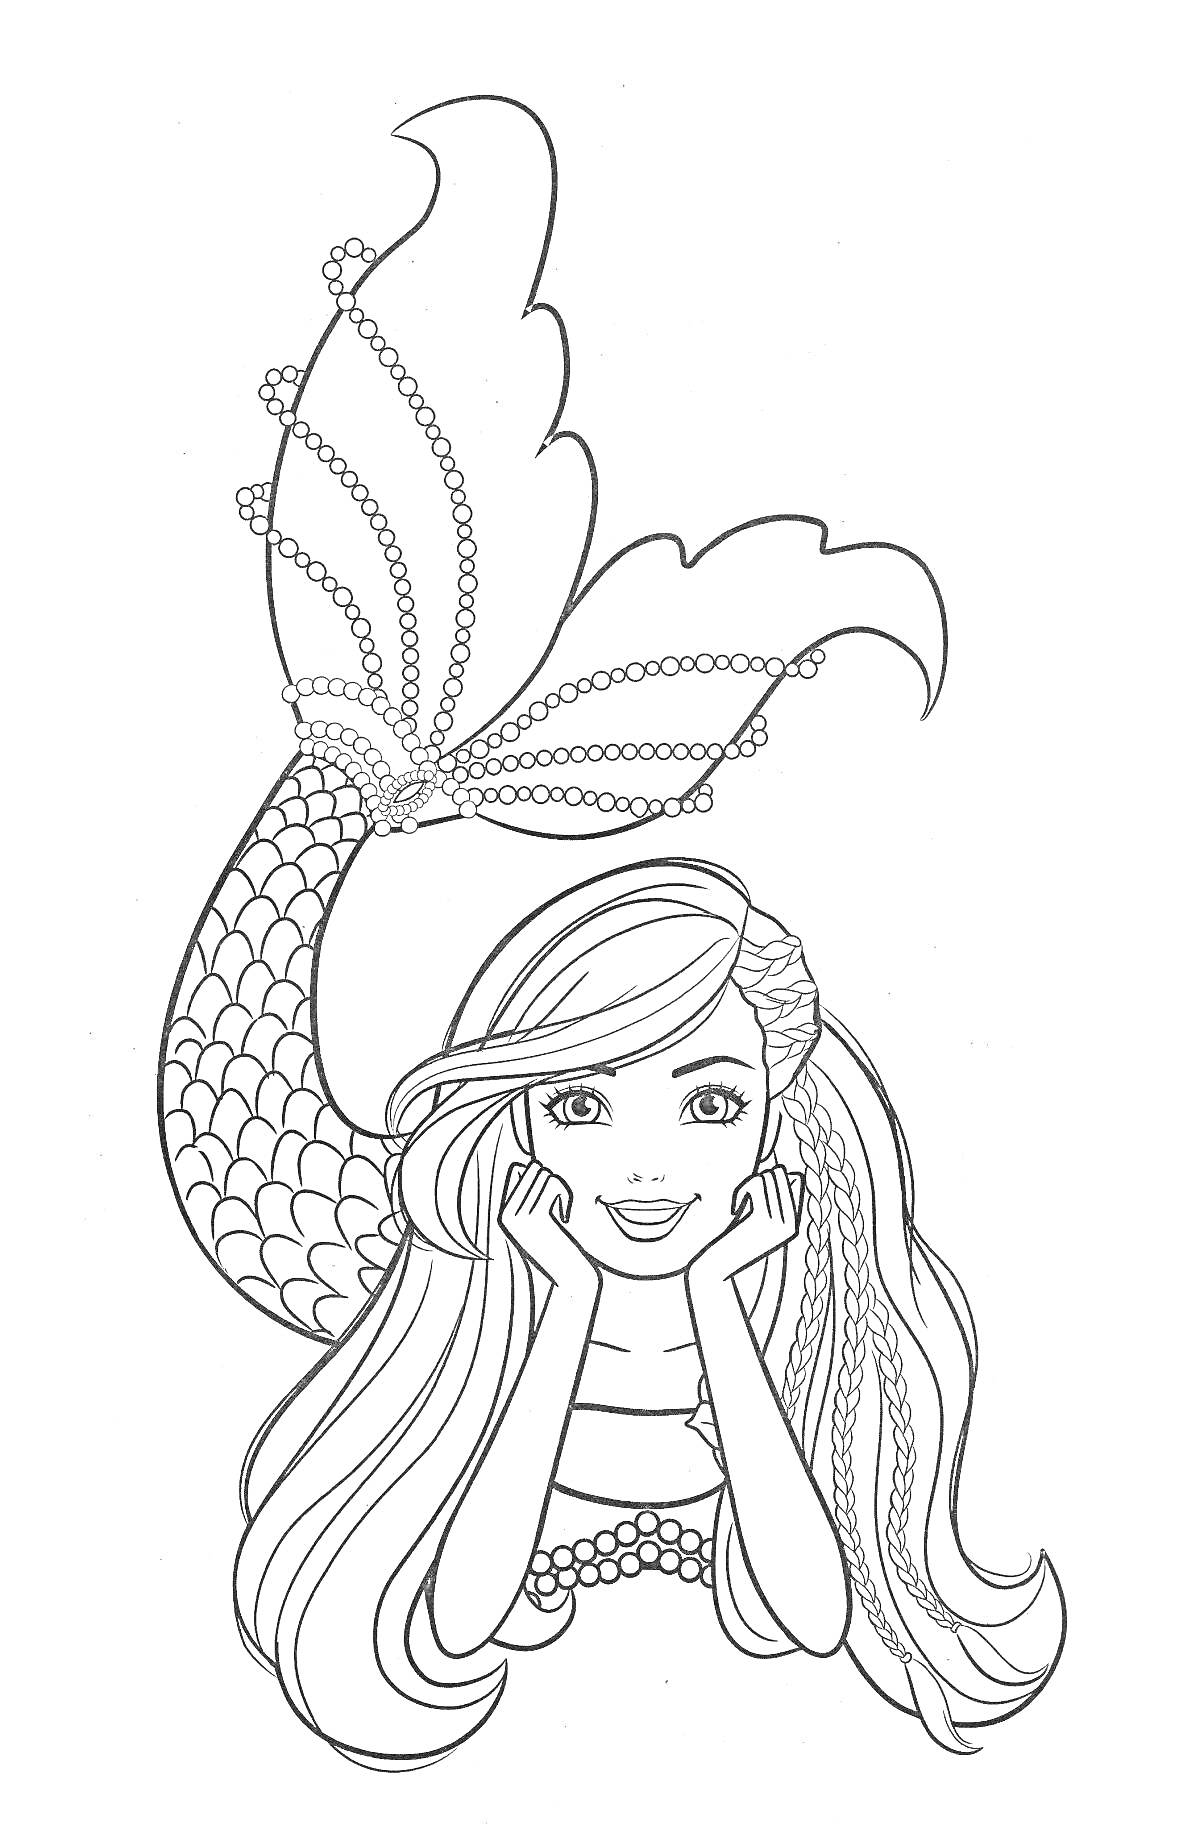 Раскраска Барби-русалка с длинными волосами, хвост с узорами, поддерживает лицо руками